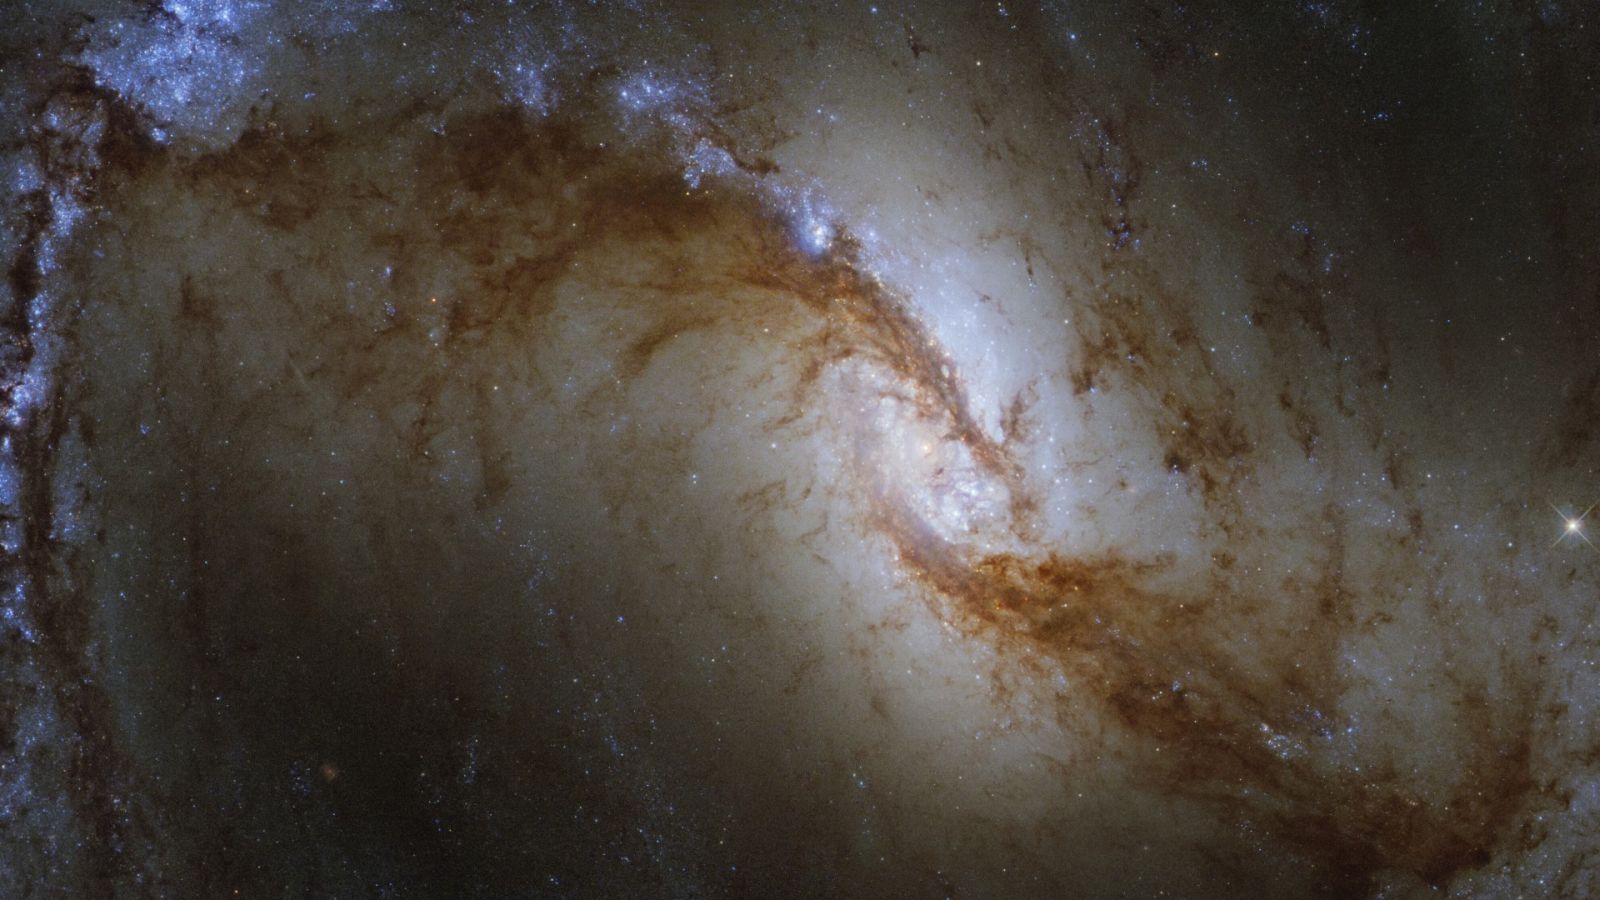  La Gran Galaxia Espiral Rayada, donde se ha observado el lugar de formación de estrellas